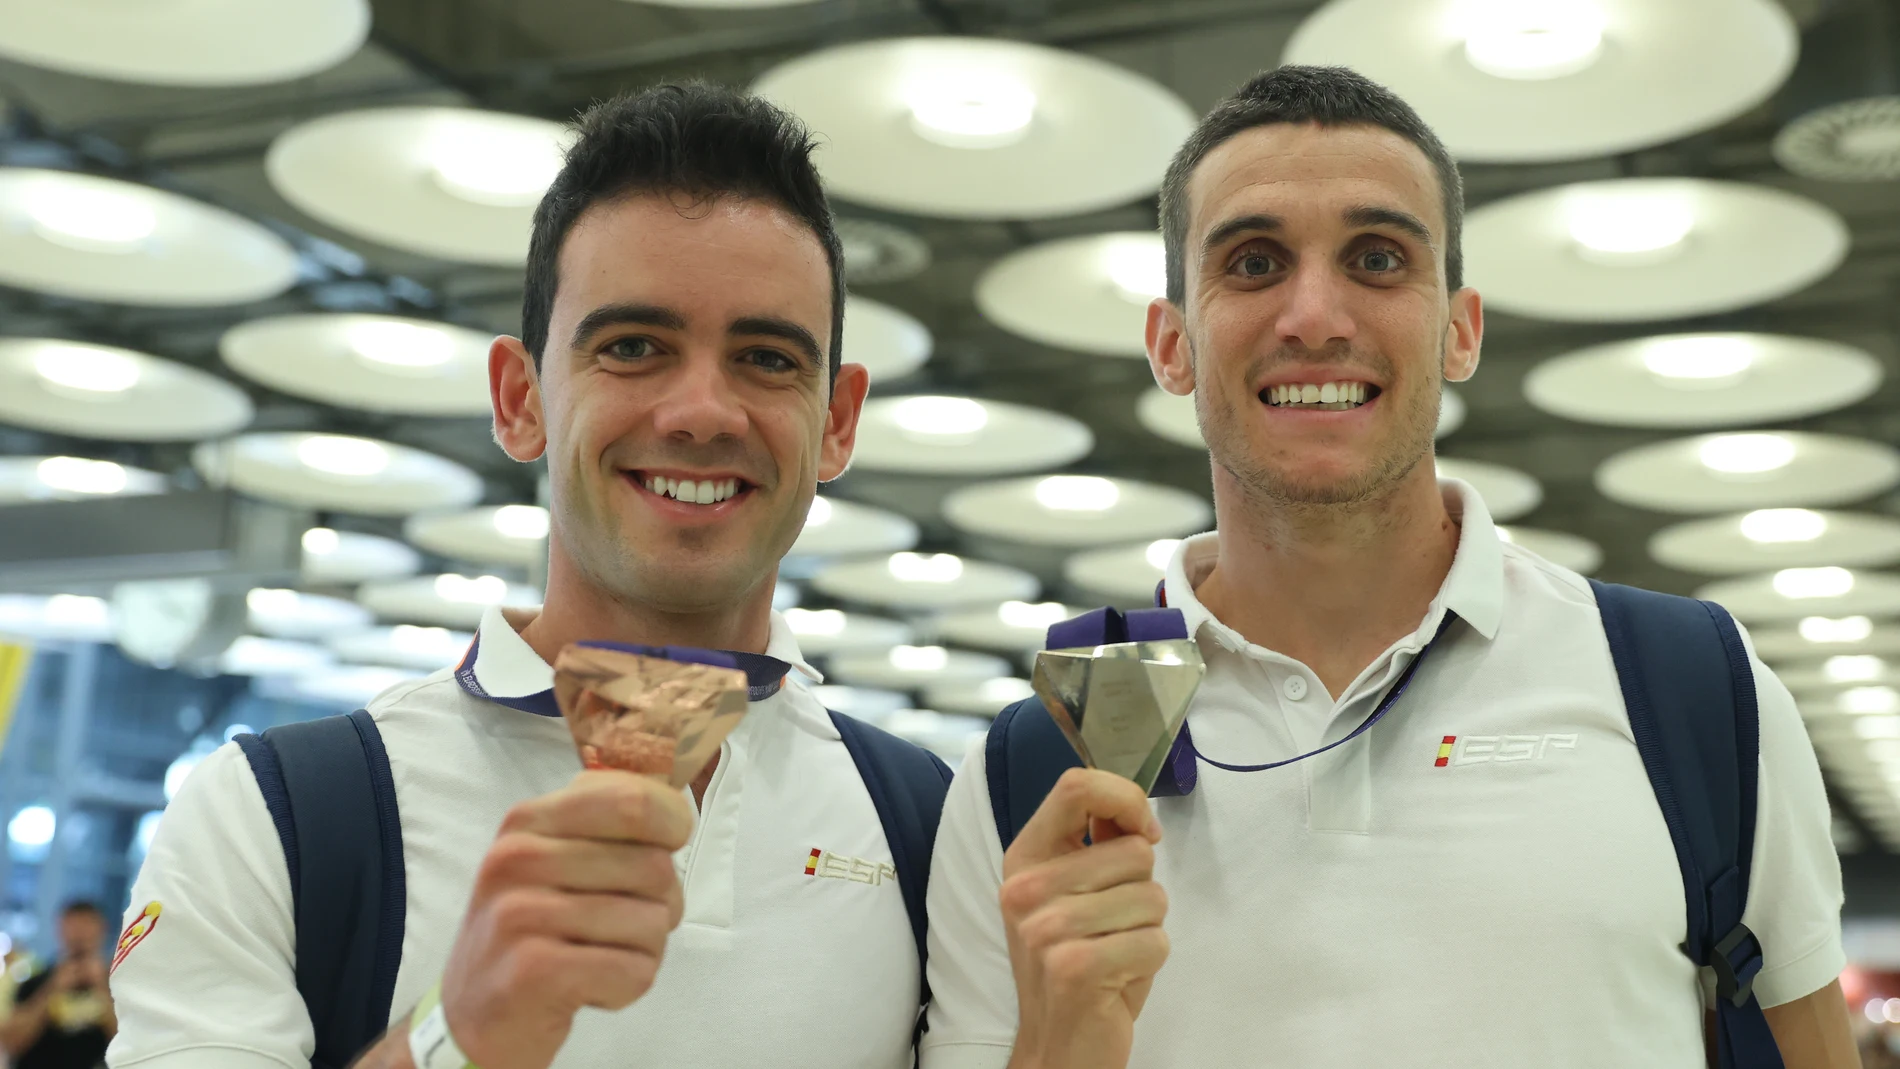 Diego García, bronce en los 20 kilómetros marcha, y Mariano García, oro en 800, muestran sus medallas de los Europeos a su llegada a Barajas